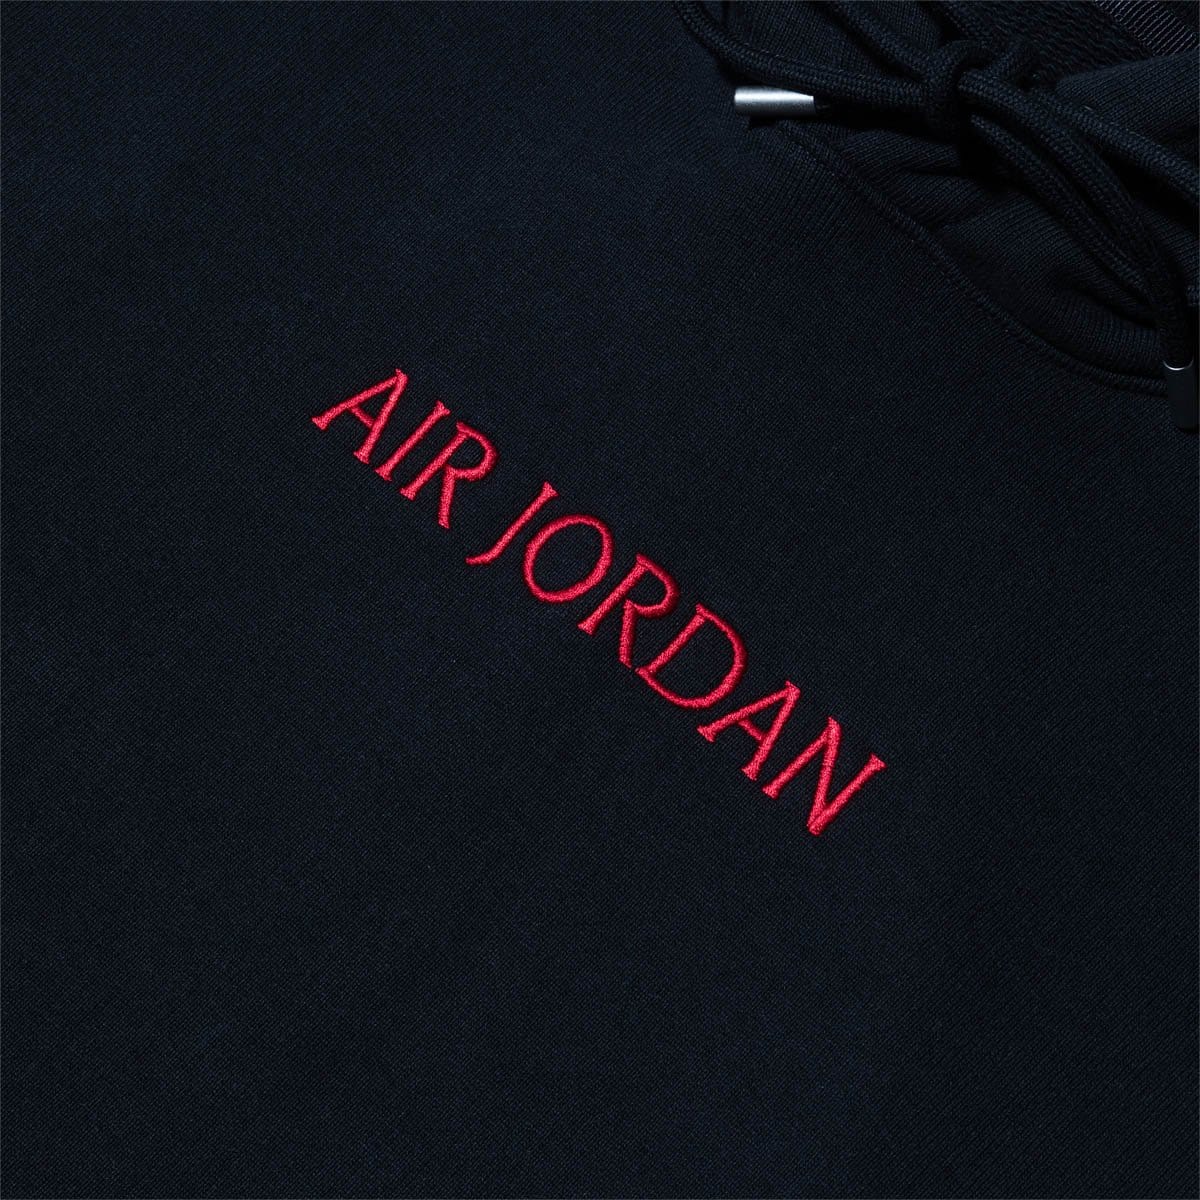 air jordan black hoodie